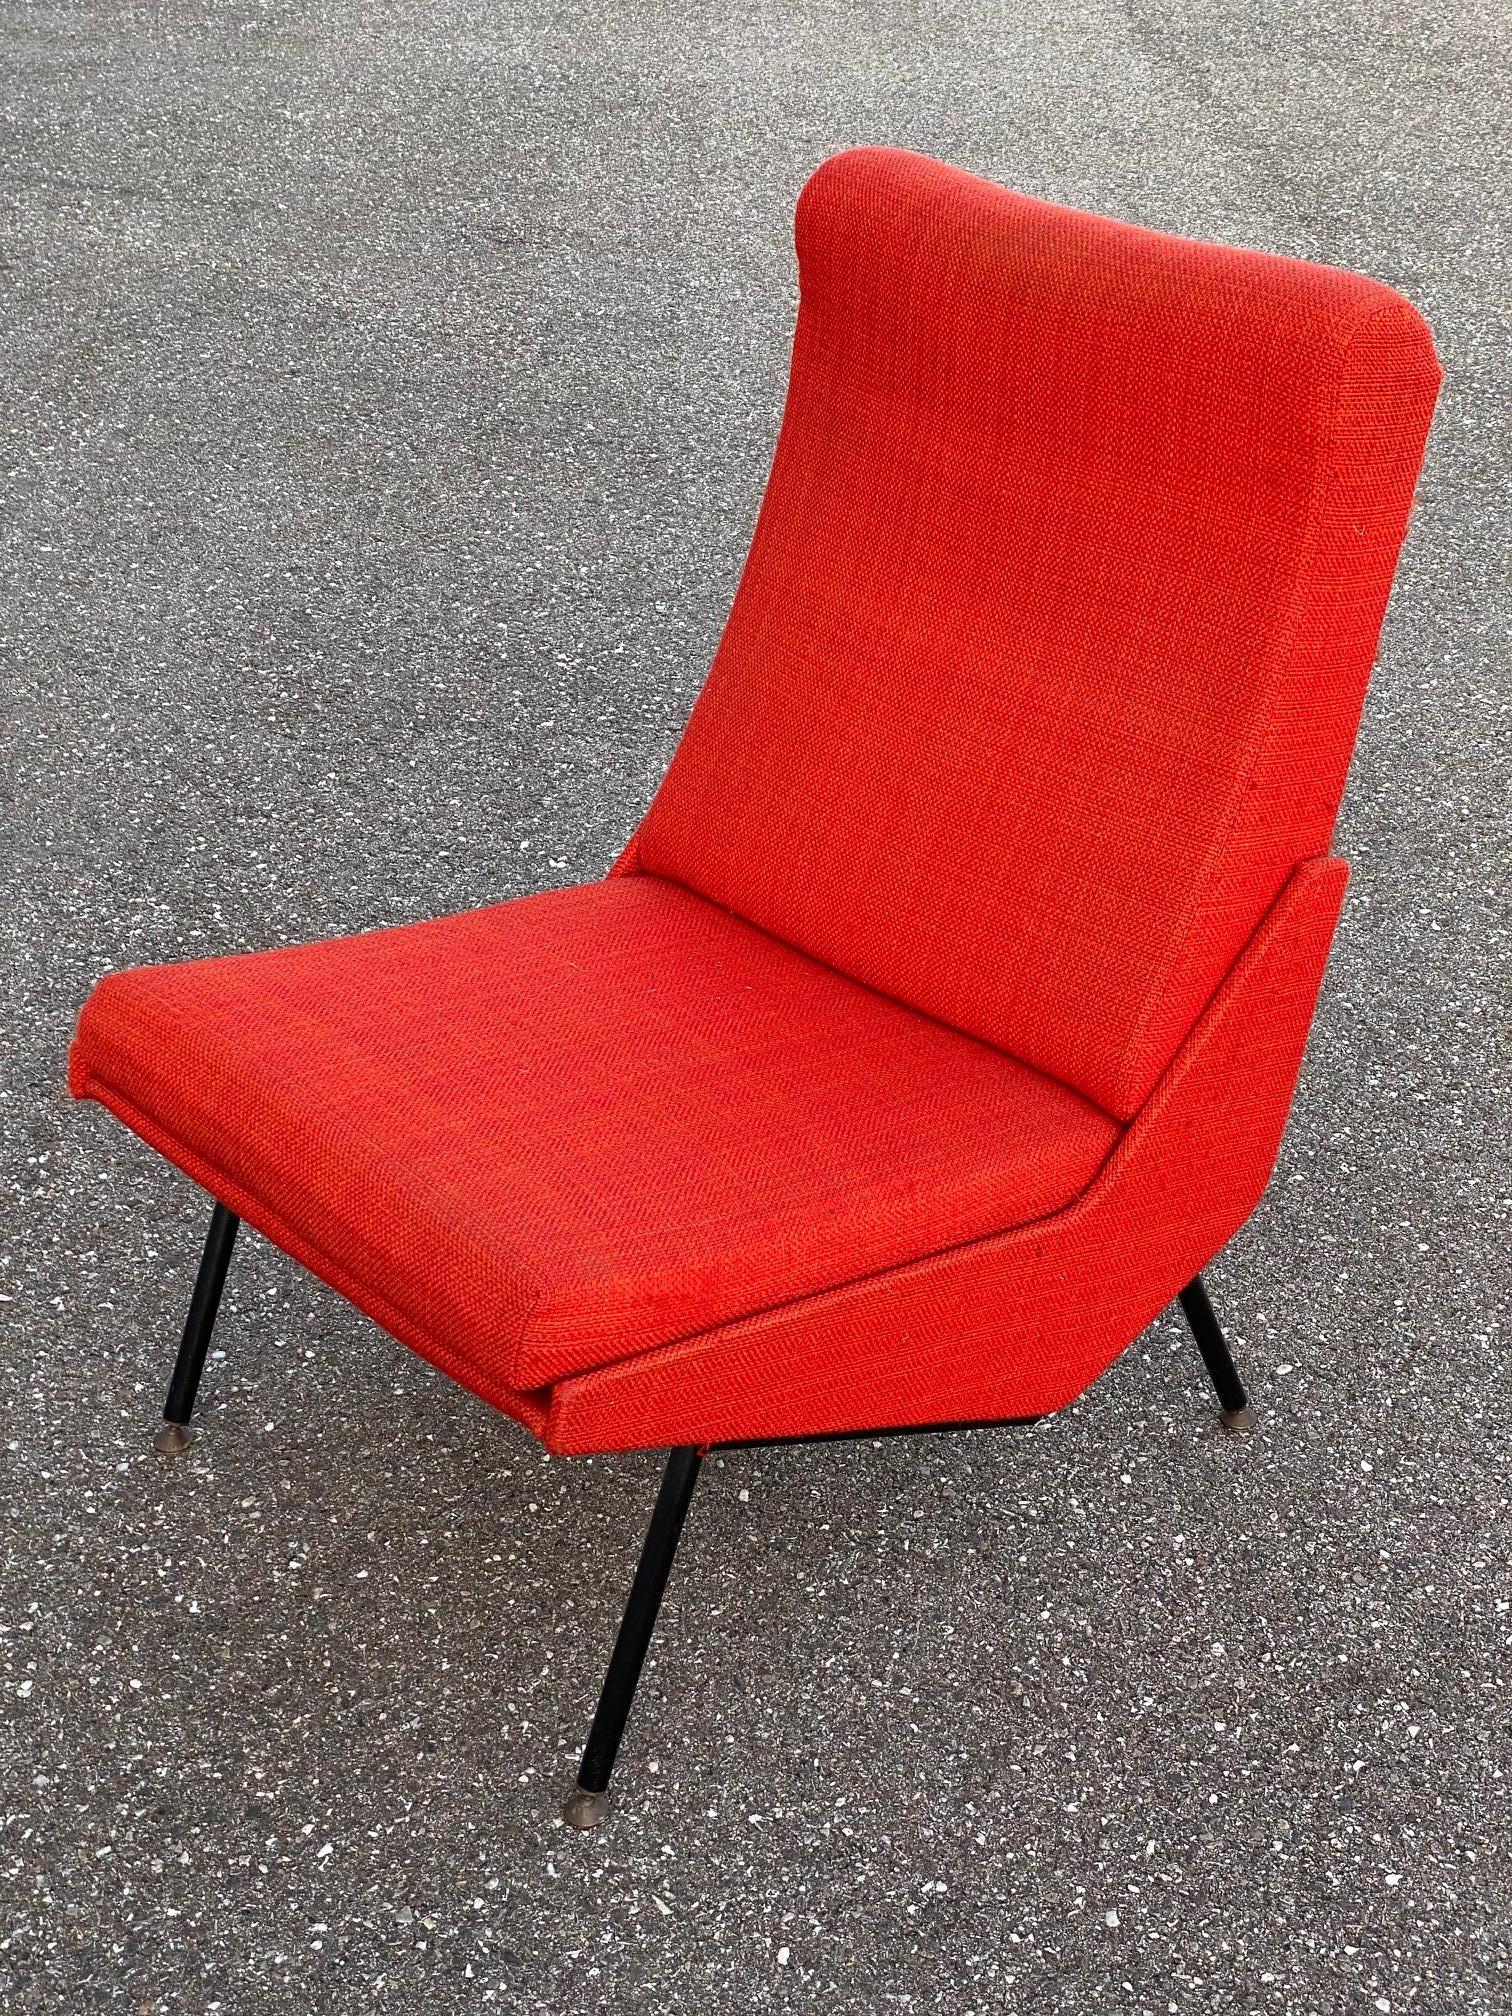 Chaise Troika conçue par Pierre Guariche dans les années 1960 pour Airborne 
Chaise en état d'origine, revêtement en tissu de laine rouge.